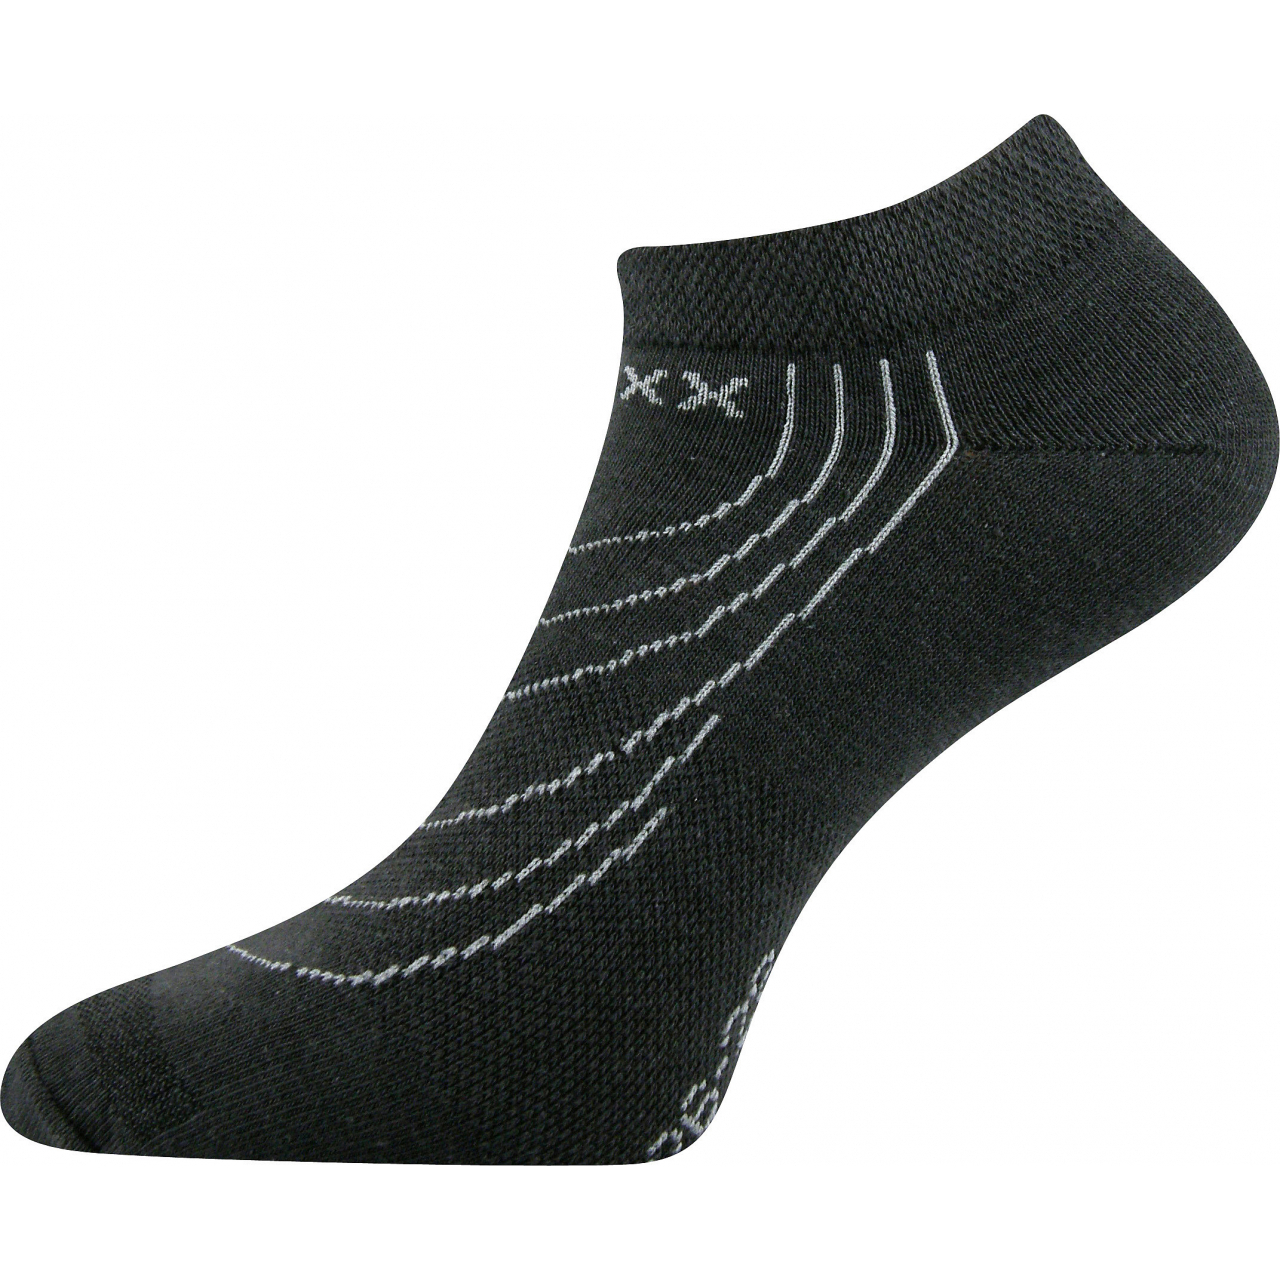 Ponožky nízké Voxx Rex - tmavě šedé, 35-38